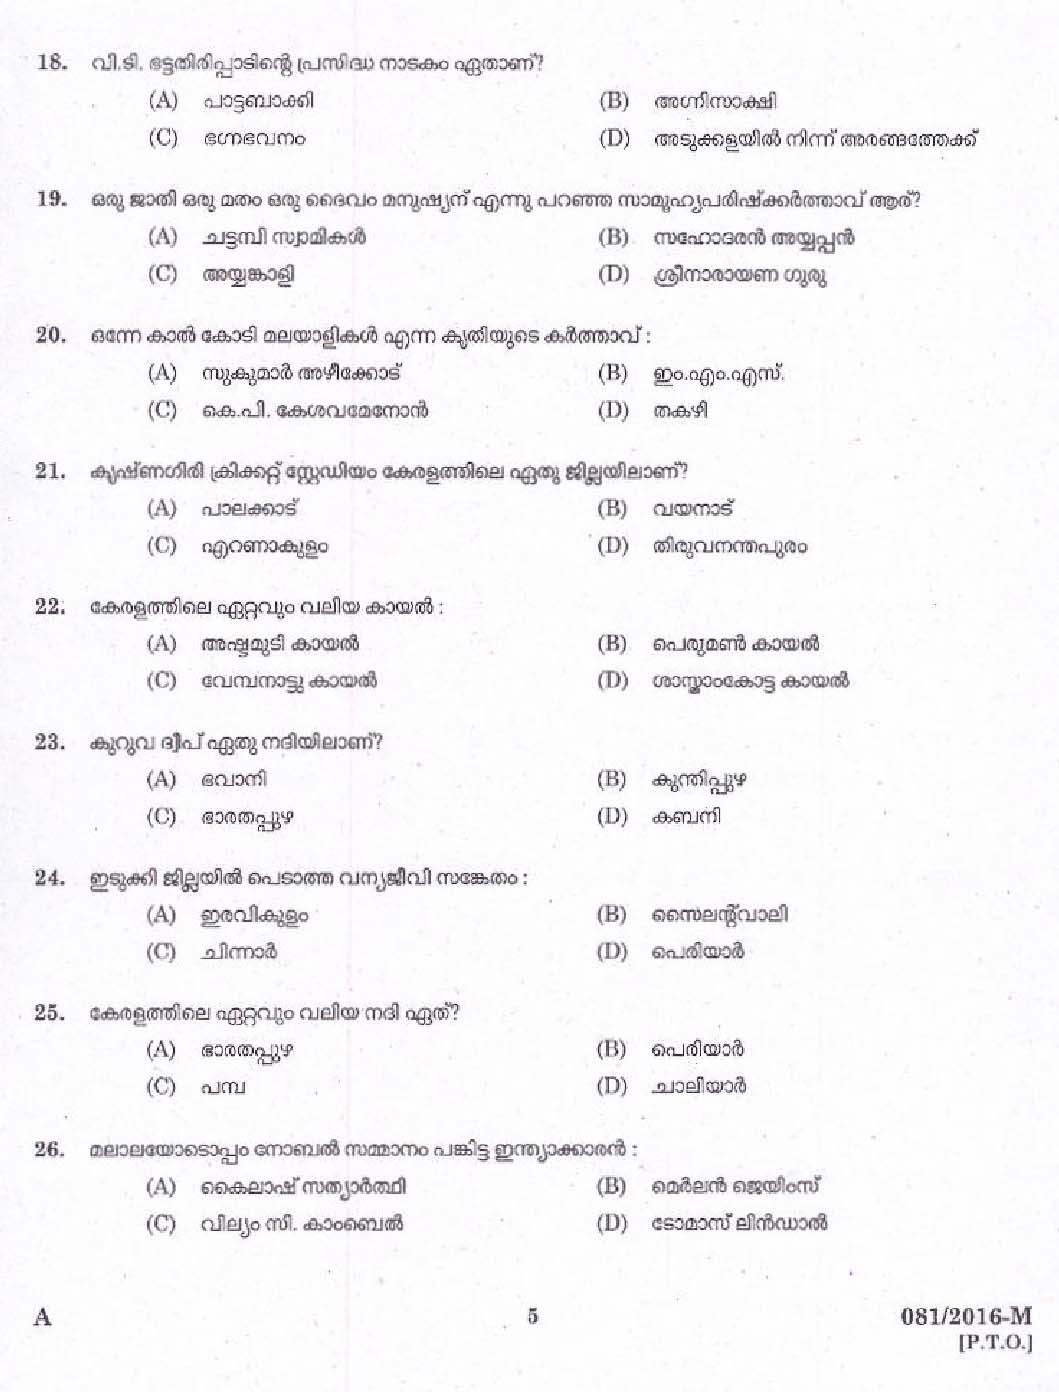 Kerala PSC Driver Grade II Exam 2016 Question Paper Code 0812016 M 3